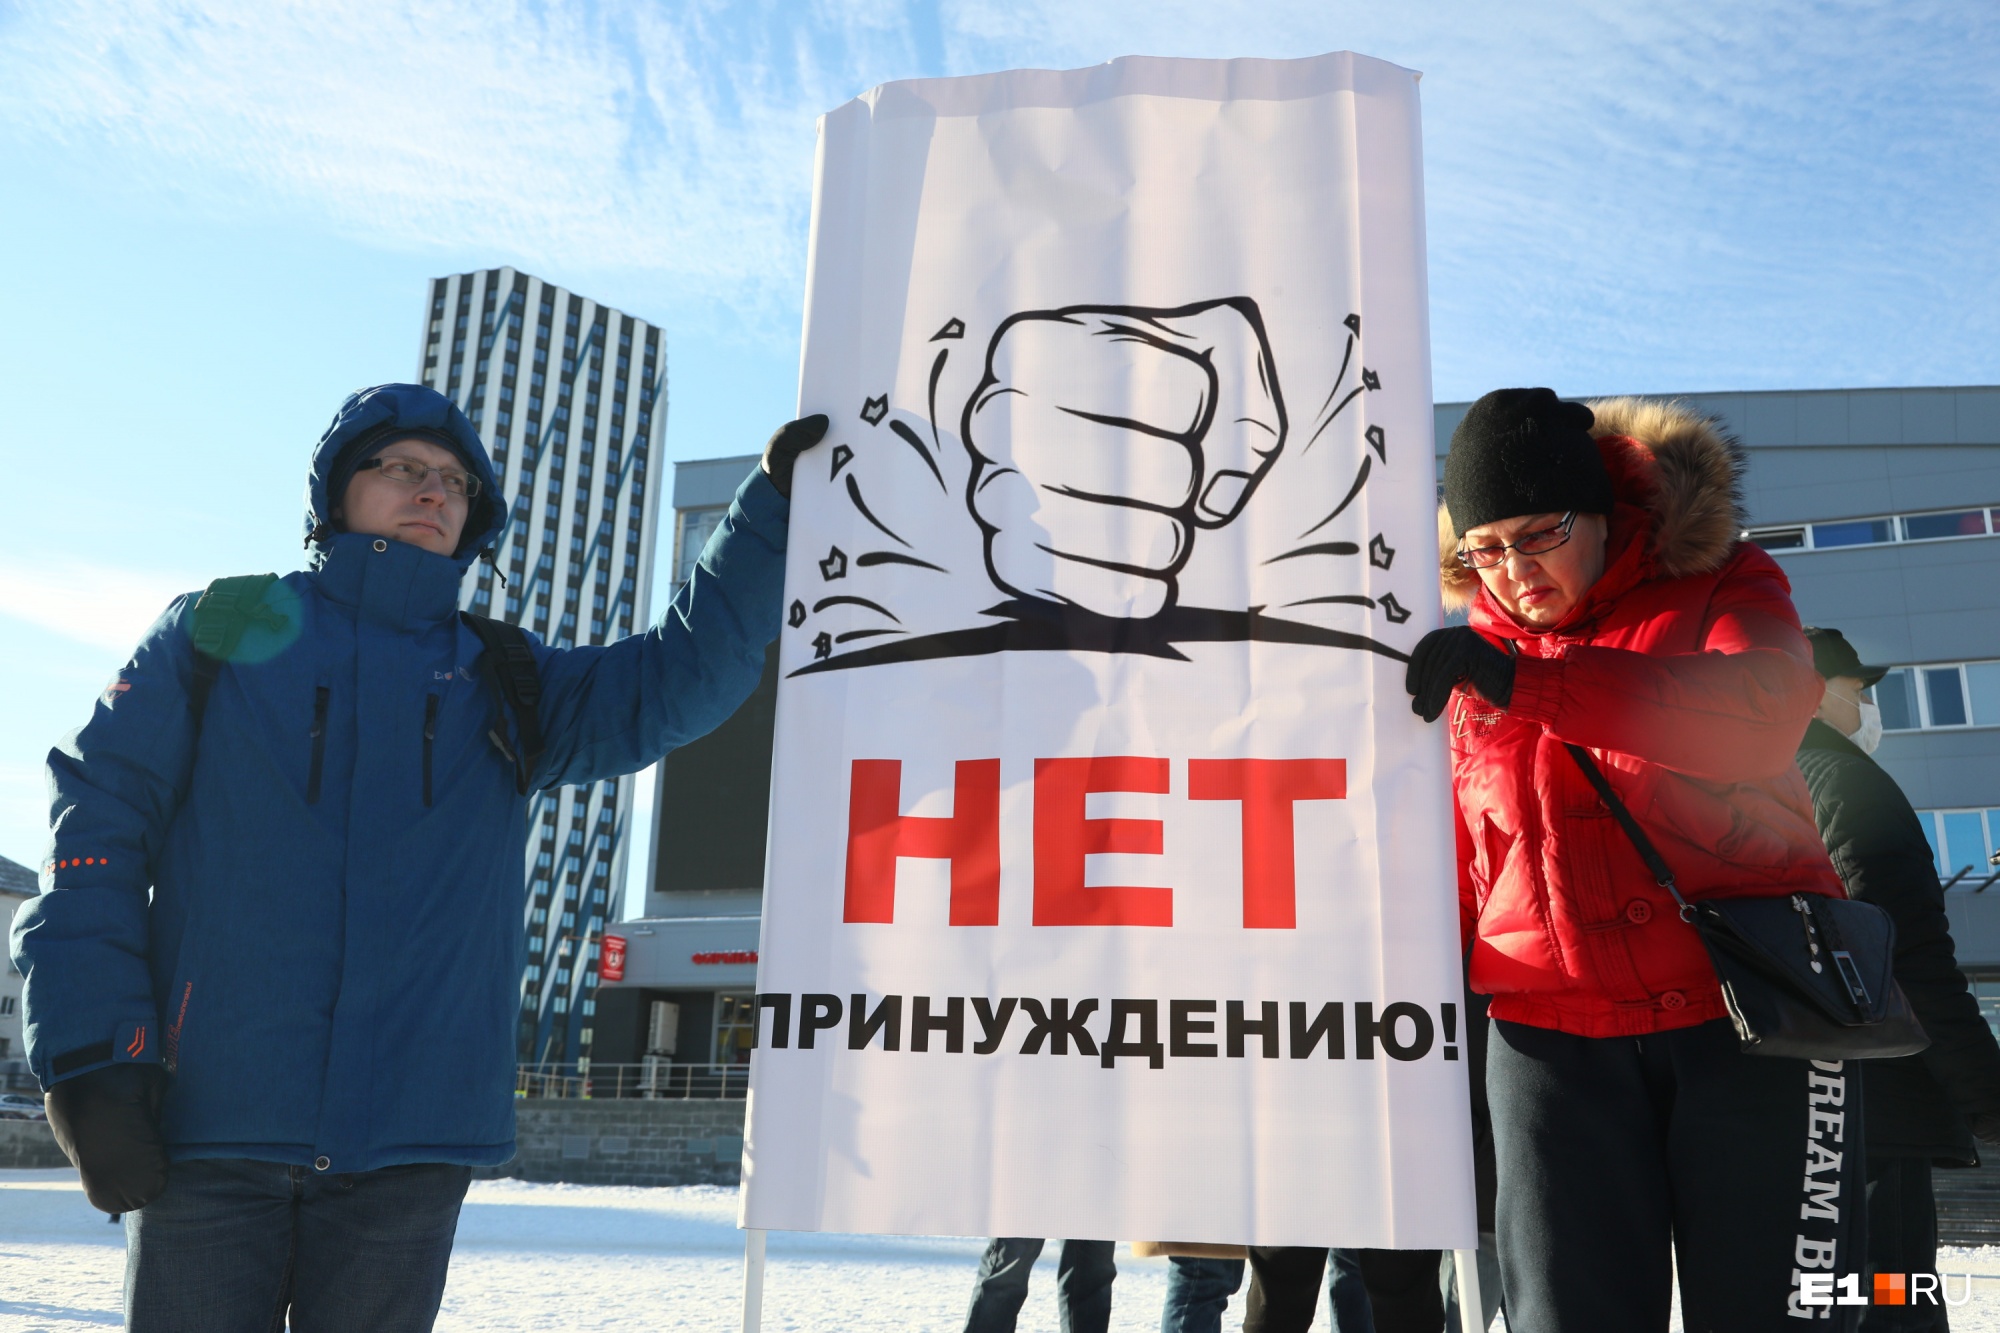 «Нет принуждению!»: в Екатеринбурге начался митинг противников QR-кодов